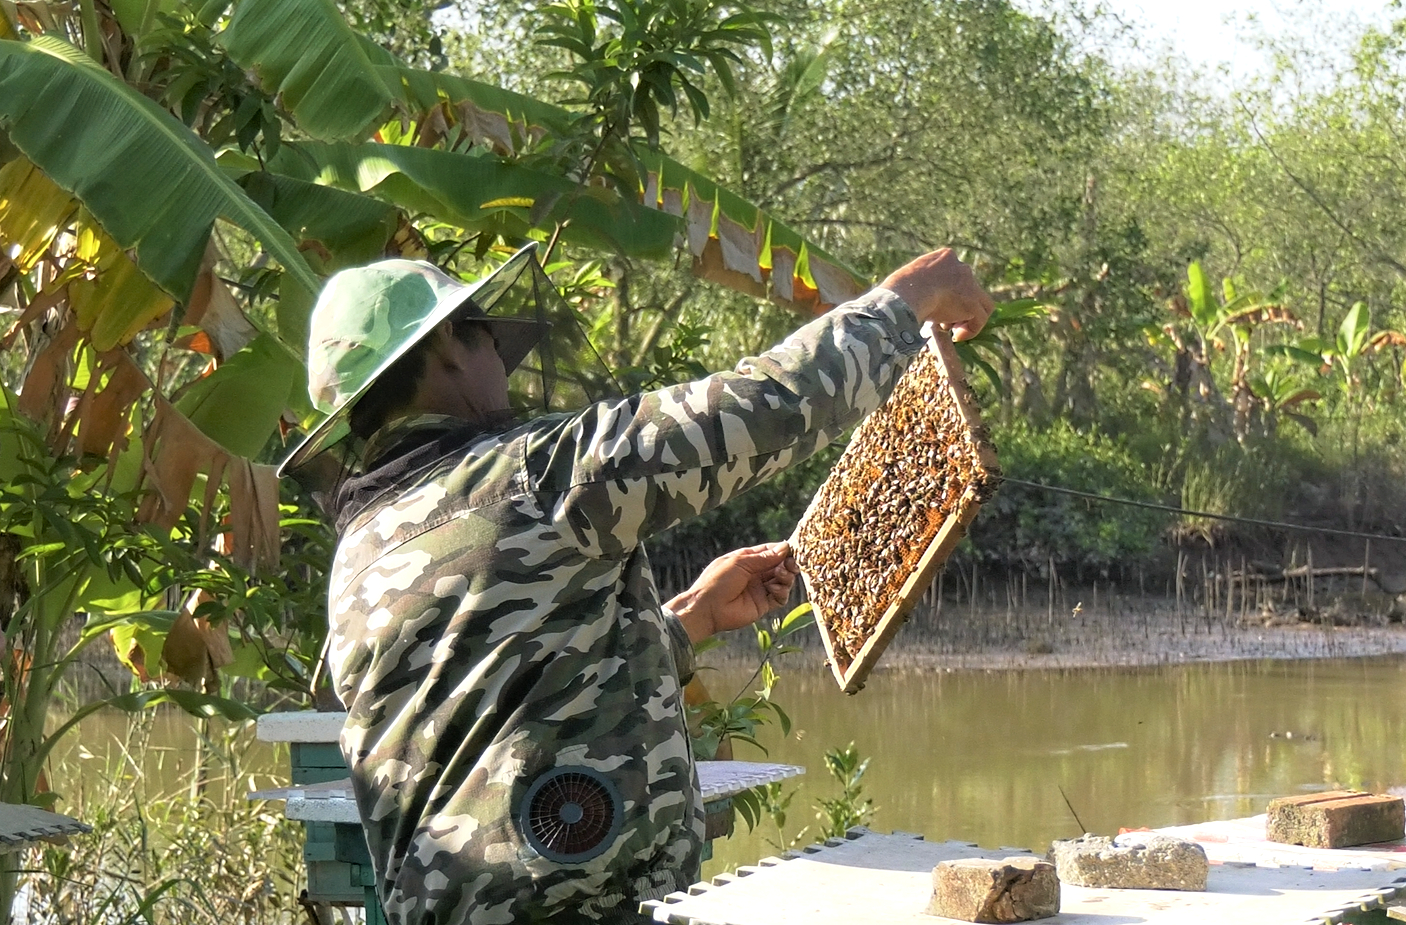 Nhiều hộ dân ở xã Đại Hợp, huyện Kiến Thụy đã chuyển từ nuôi trồng thủy sản sang nuôi ong. Ảnh: Đinh Mười.